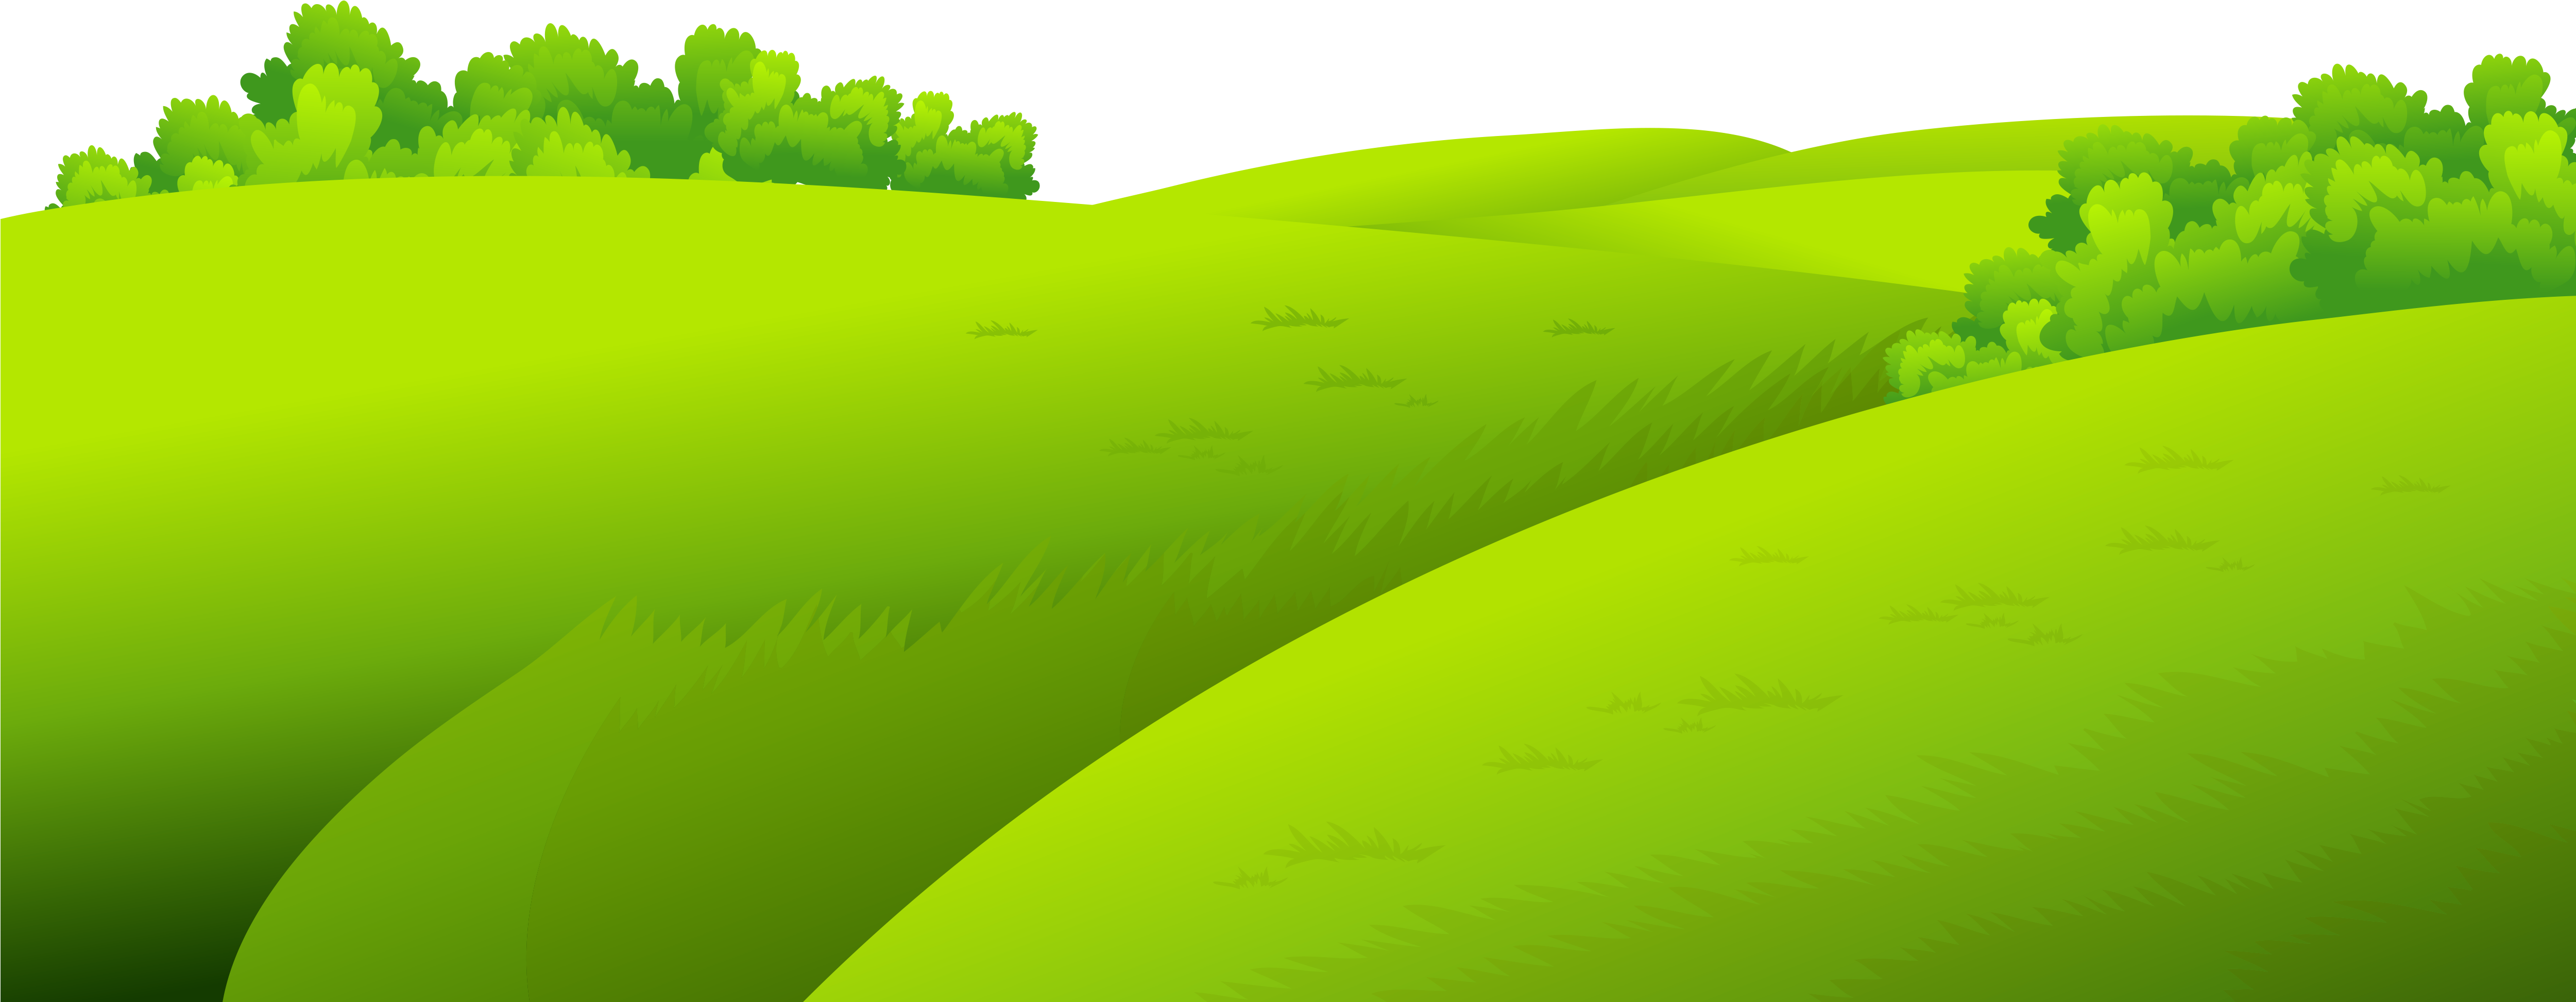 Green Grass Ground Png Clip - Cartoon Grass Field Png (5000x2235), Png Download